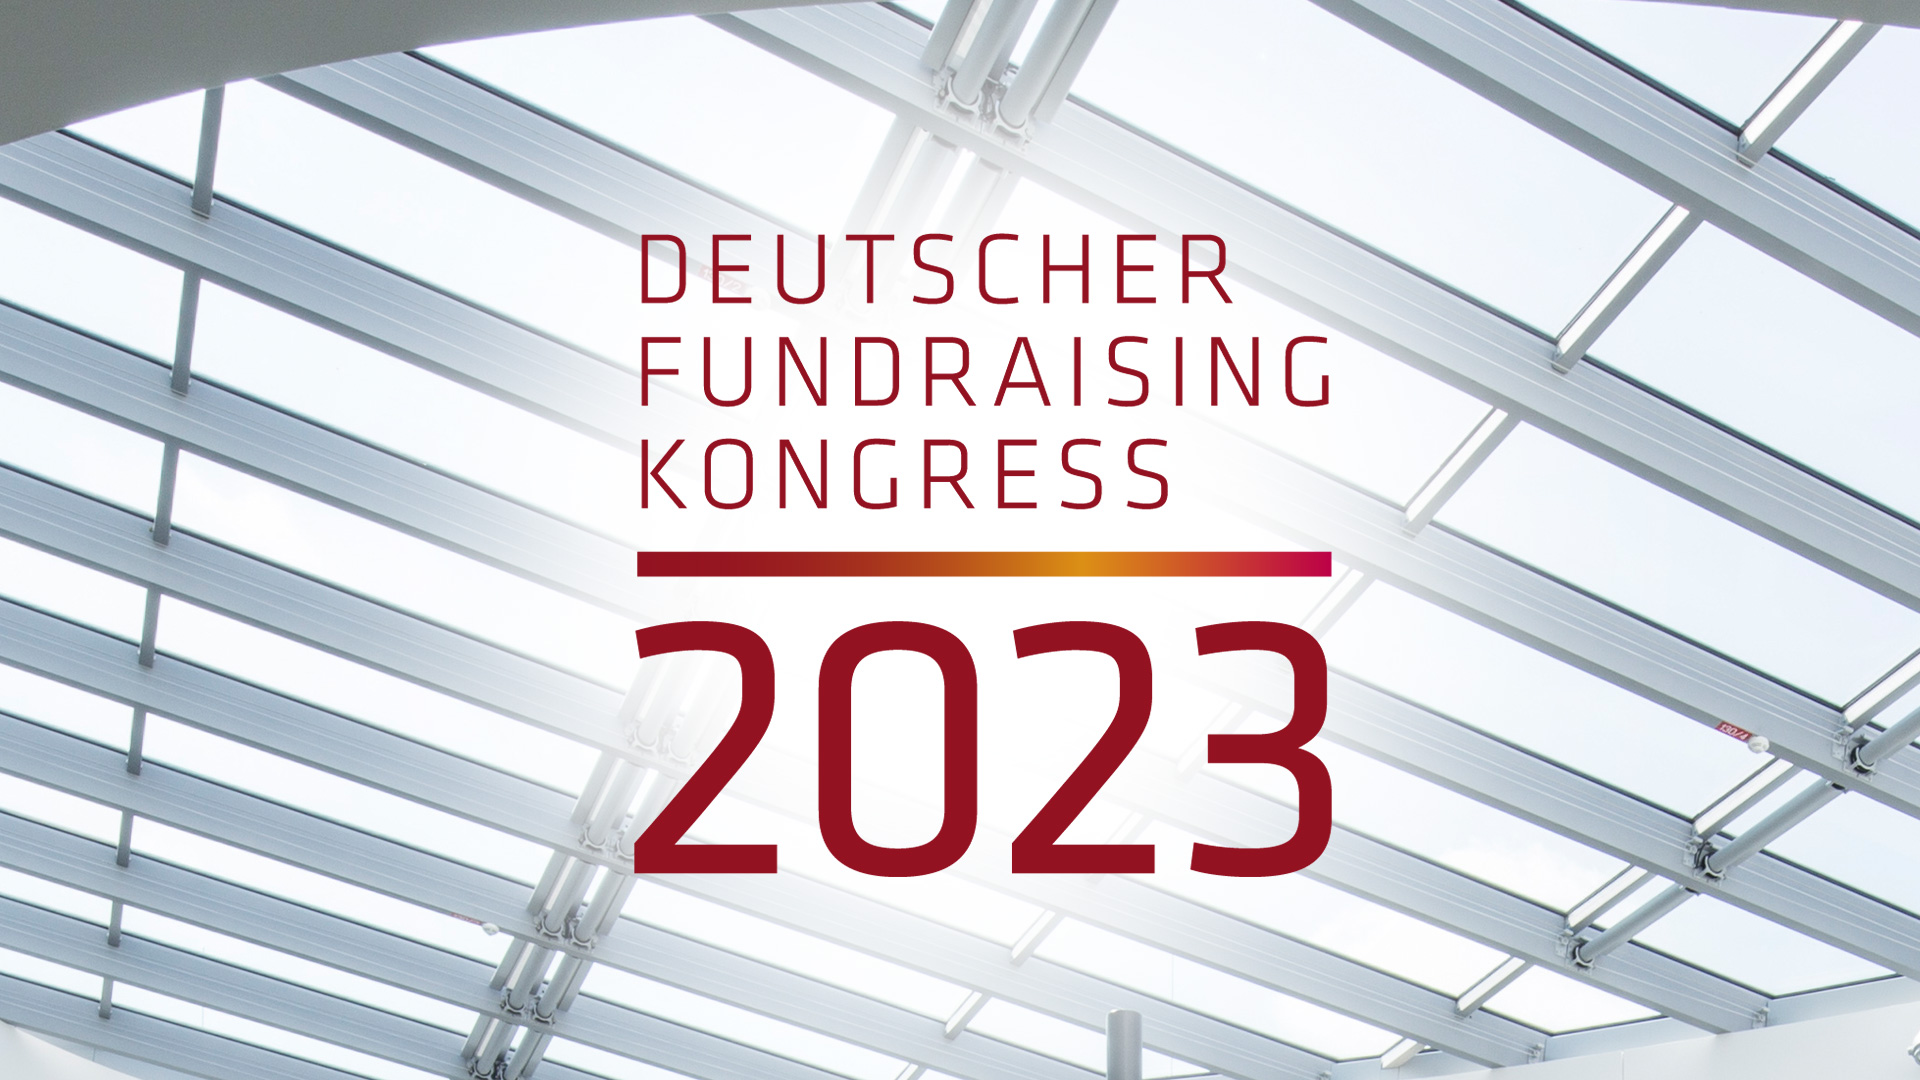 Deutscher Fundraising Kongress 2022